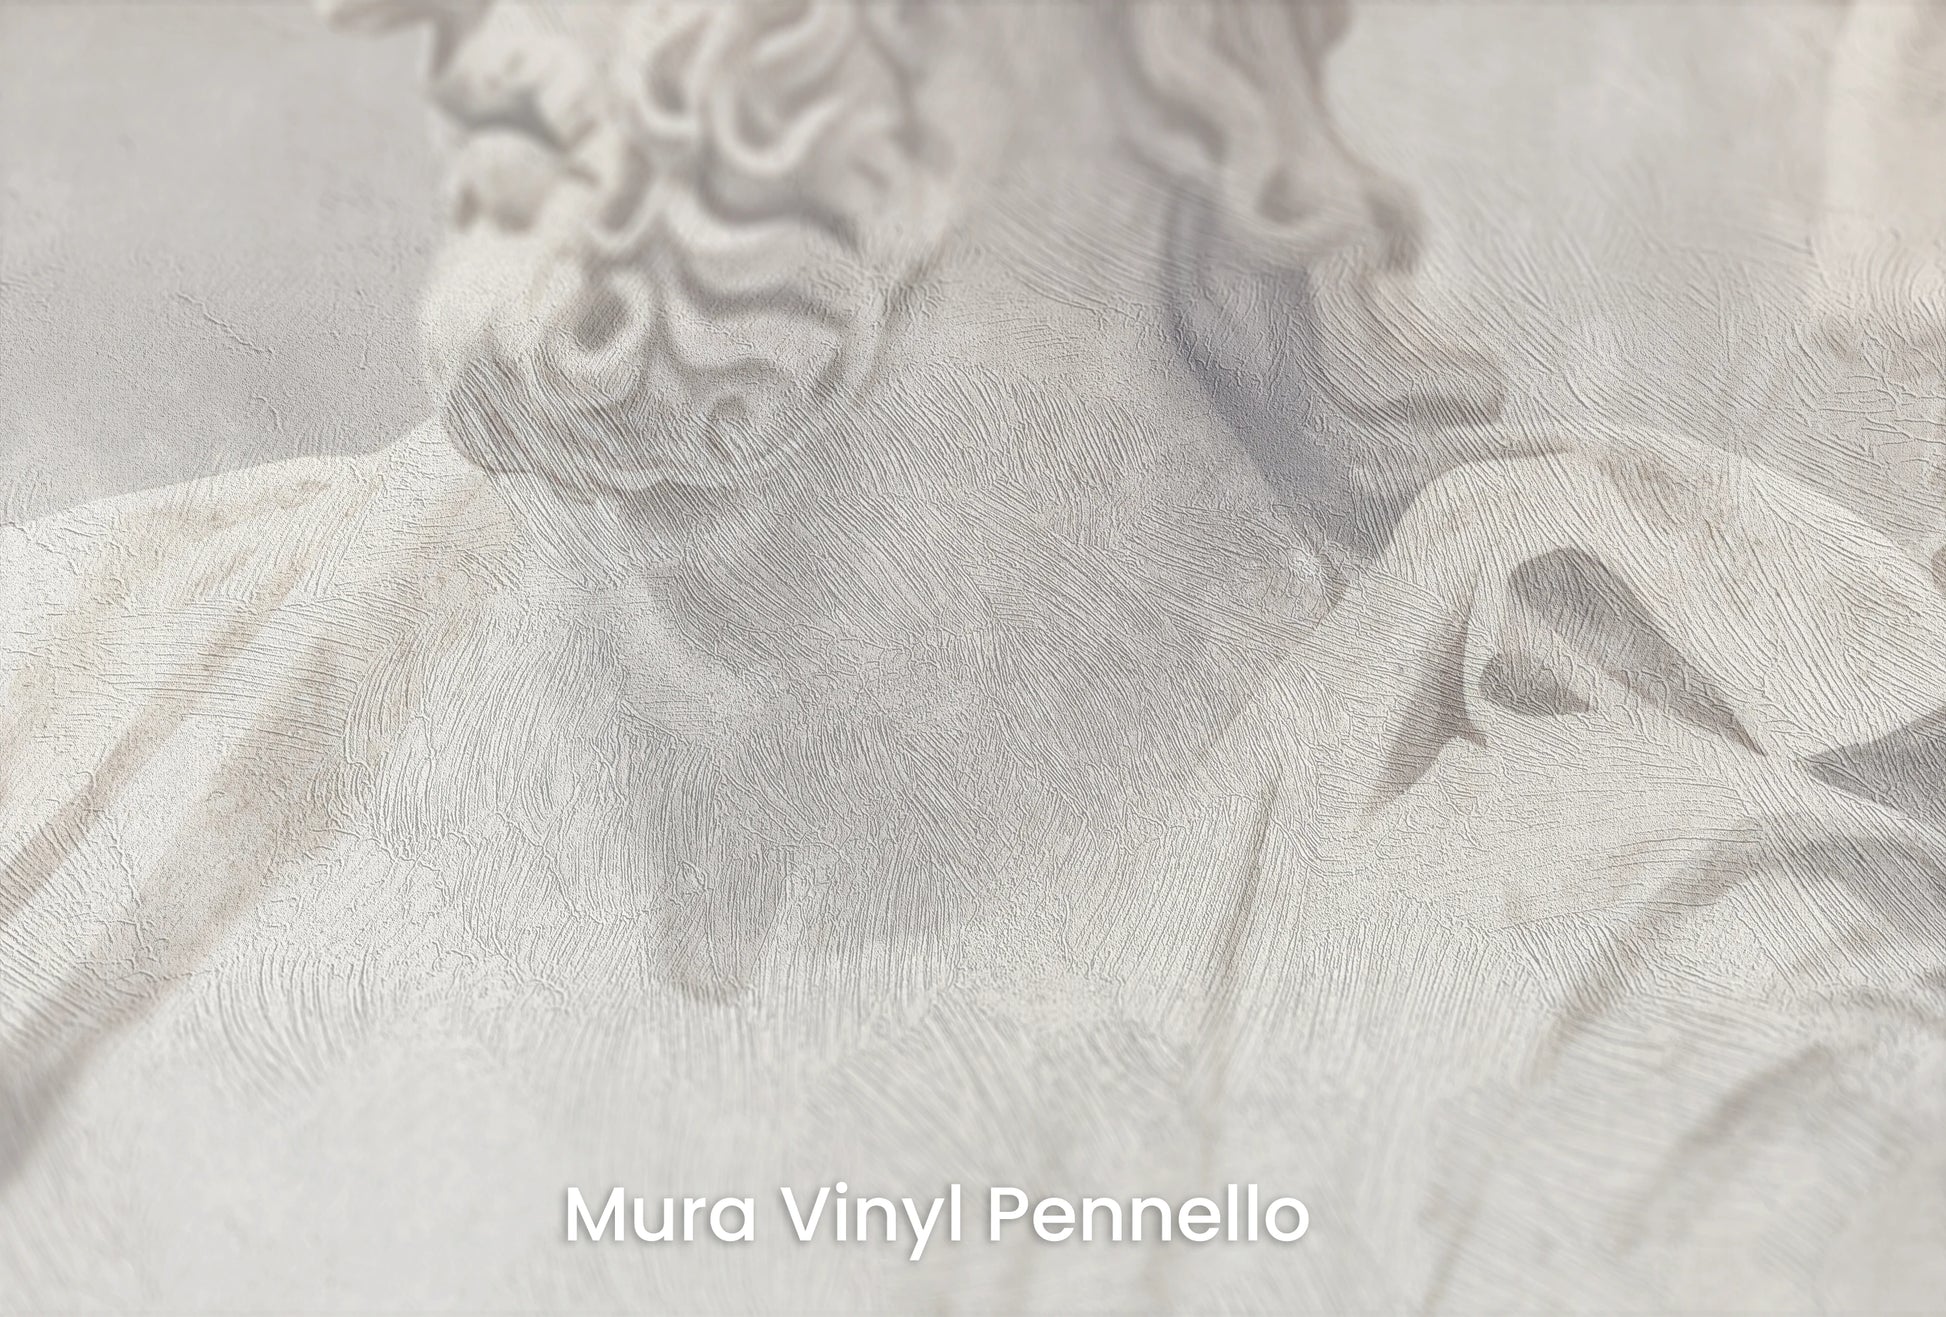 Zbliżenie na artystyczną fototapetę o nazwie Serene Titans na podłożu Mura Vinyl Pennello - faktura pociągnięć pędzla malarskiego.